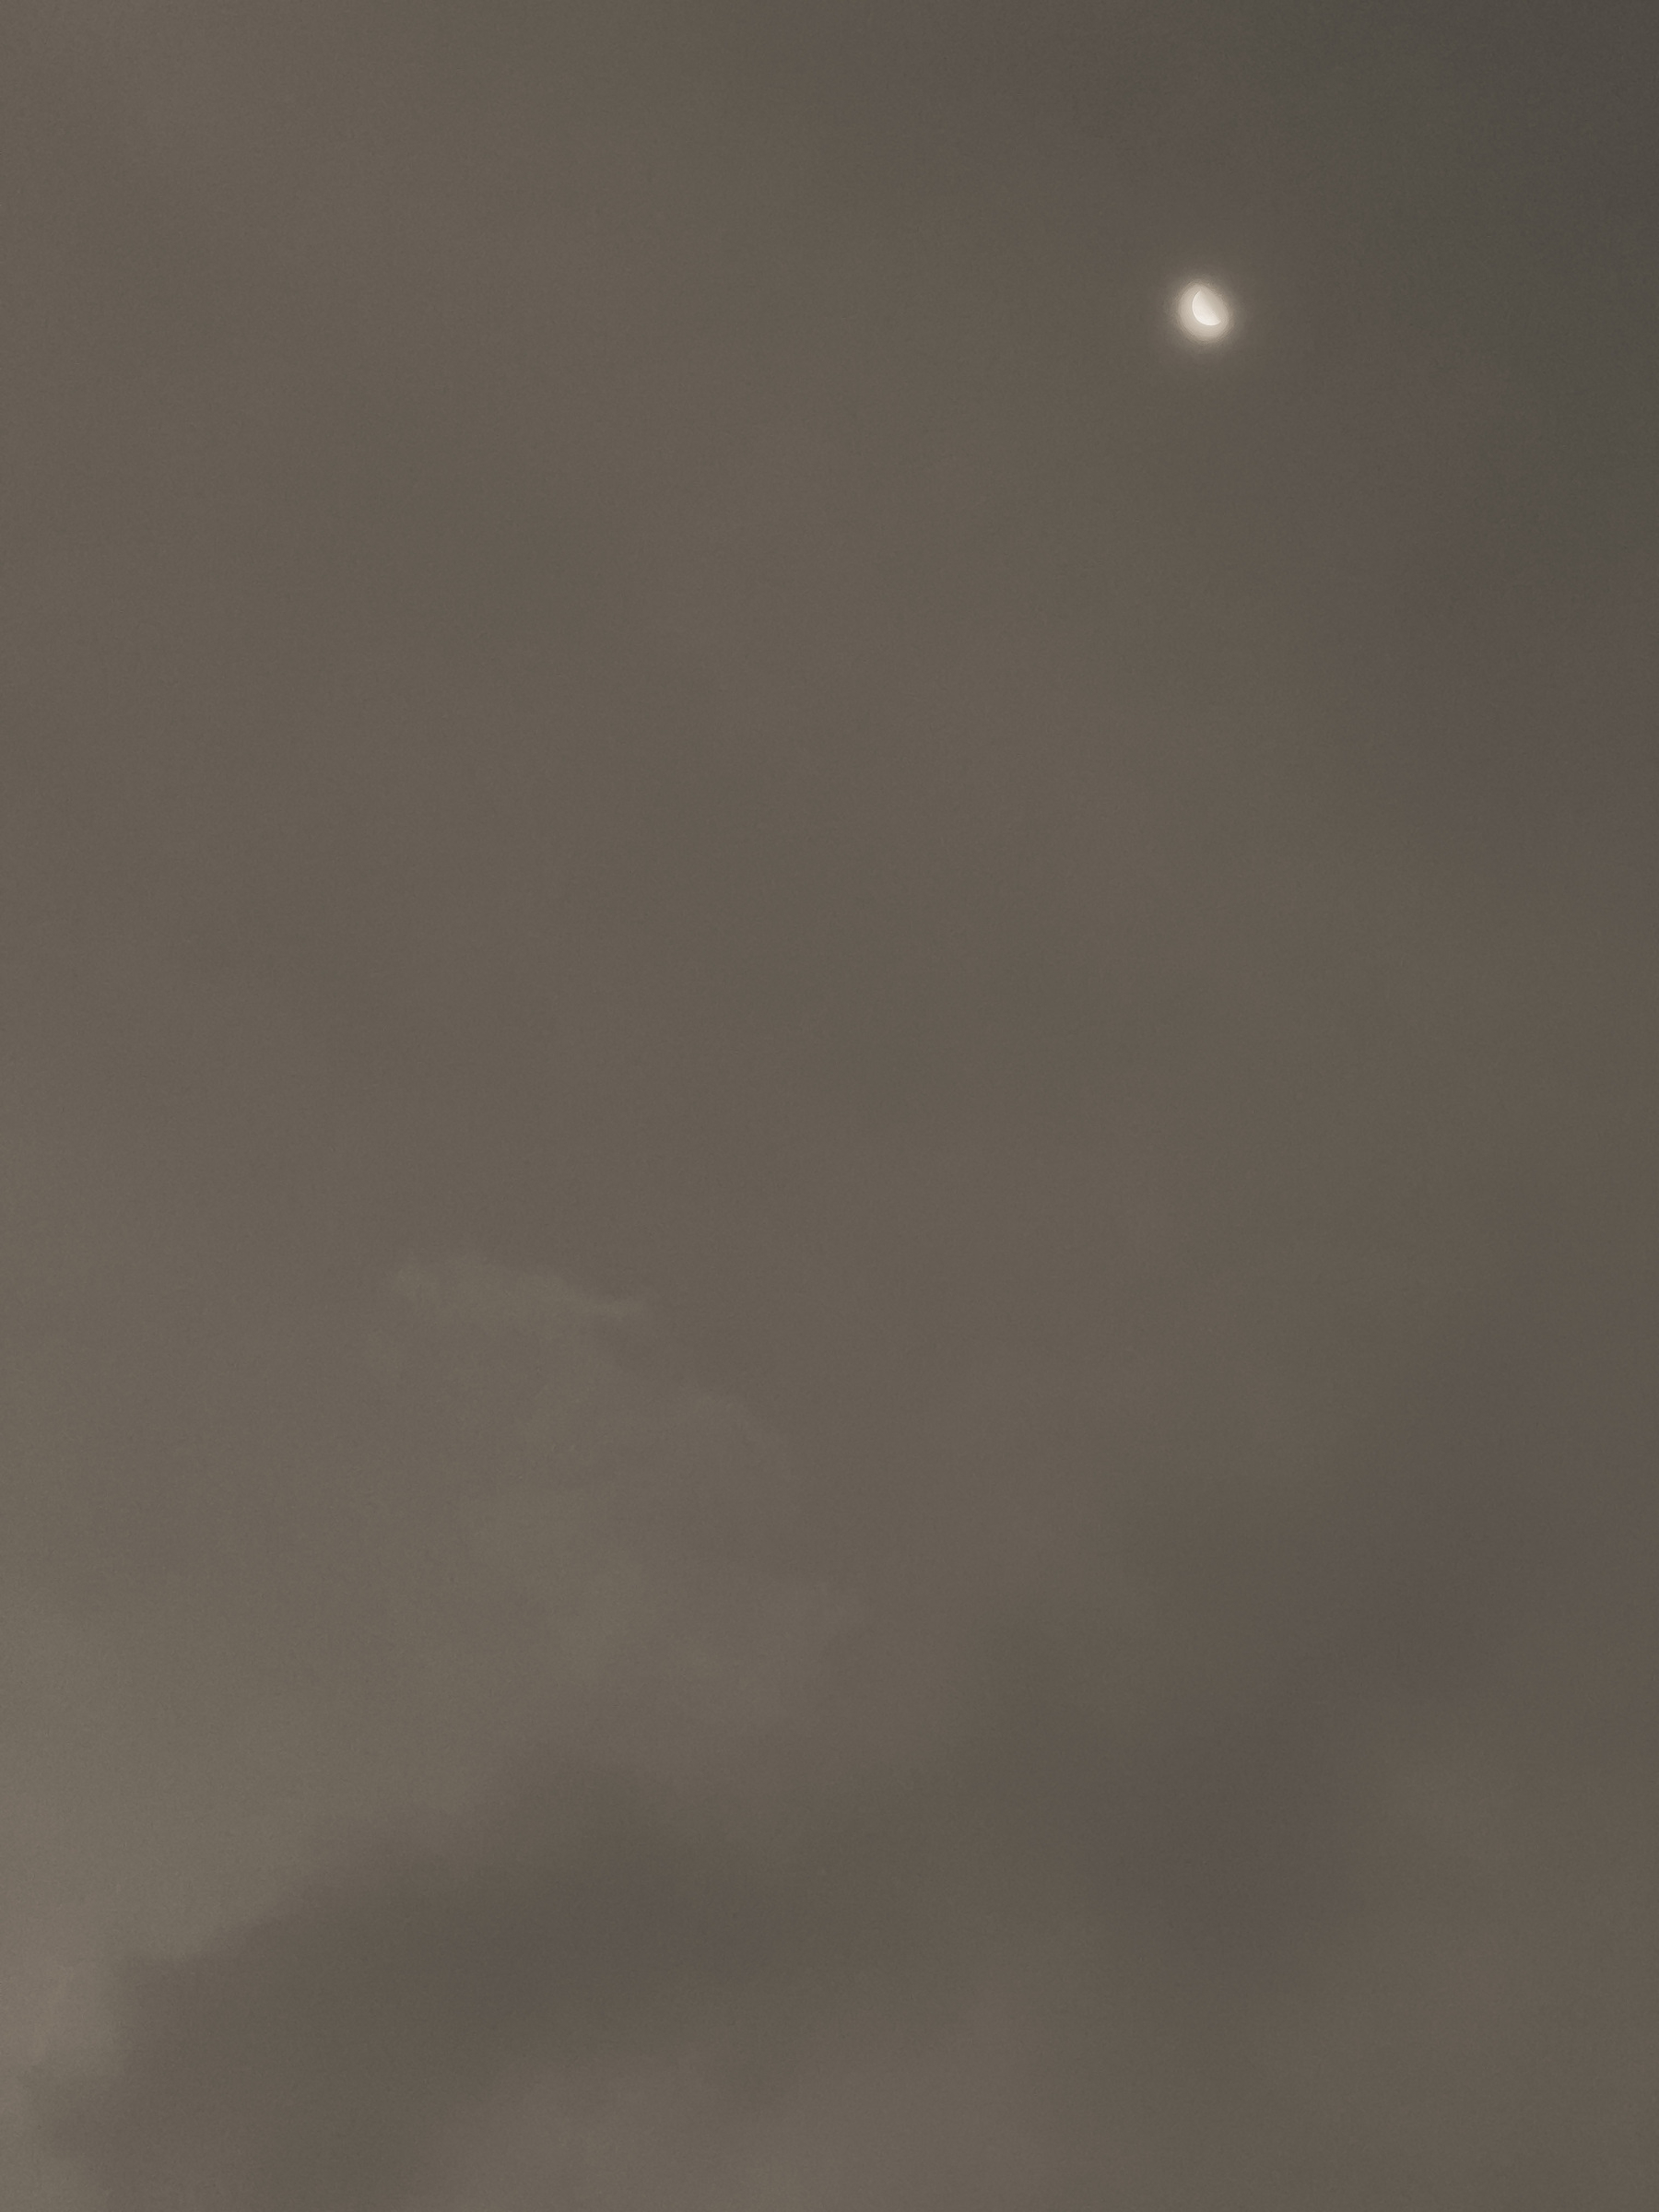 Slipper moon in a hazy sky.